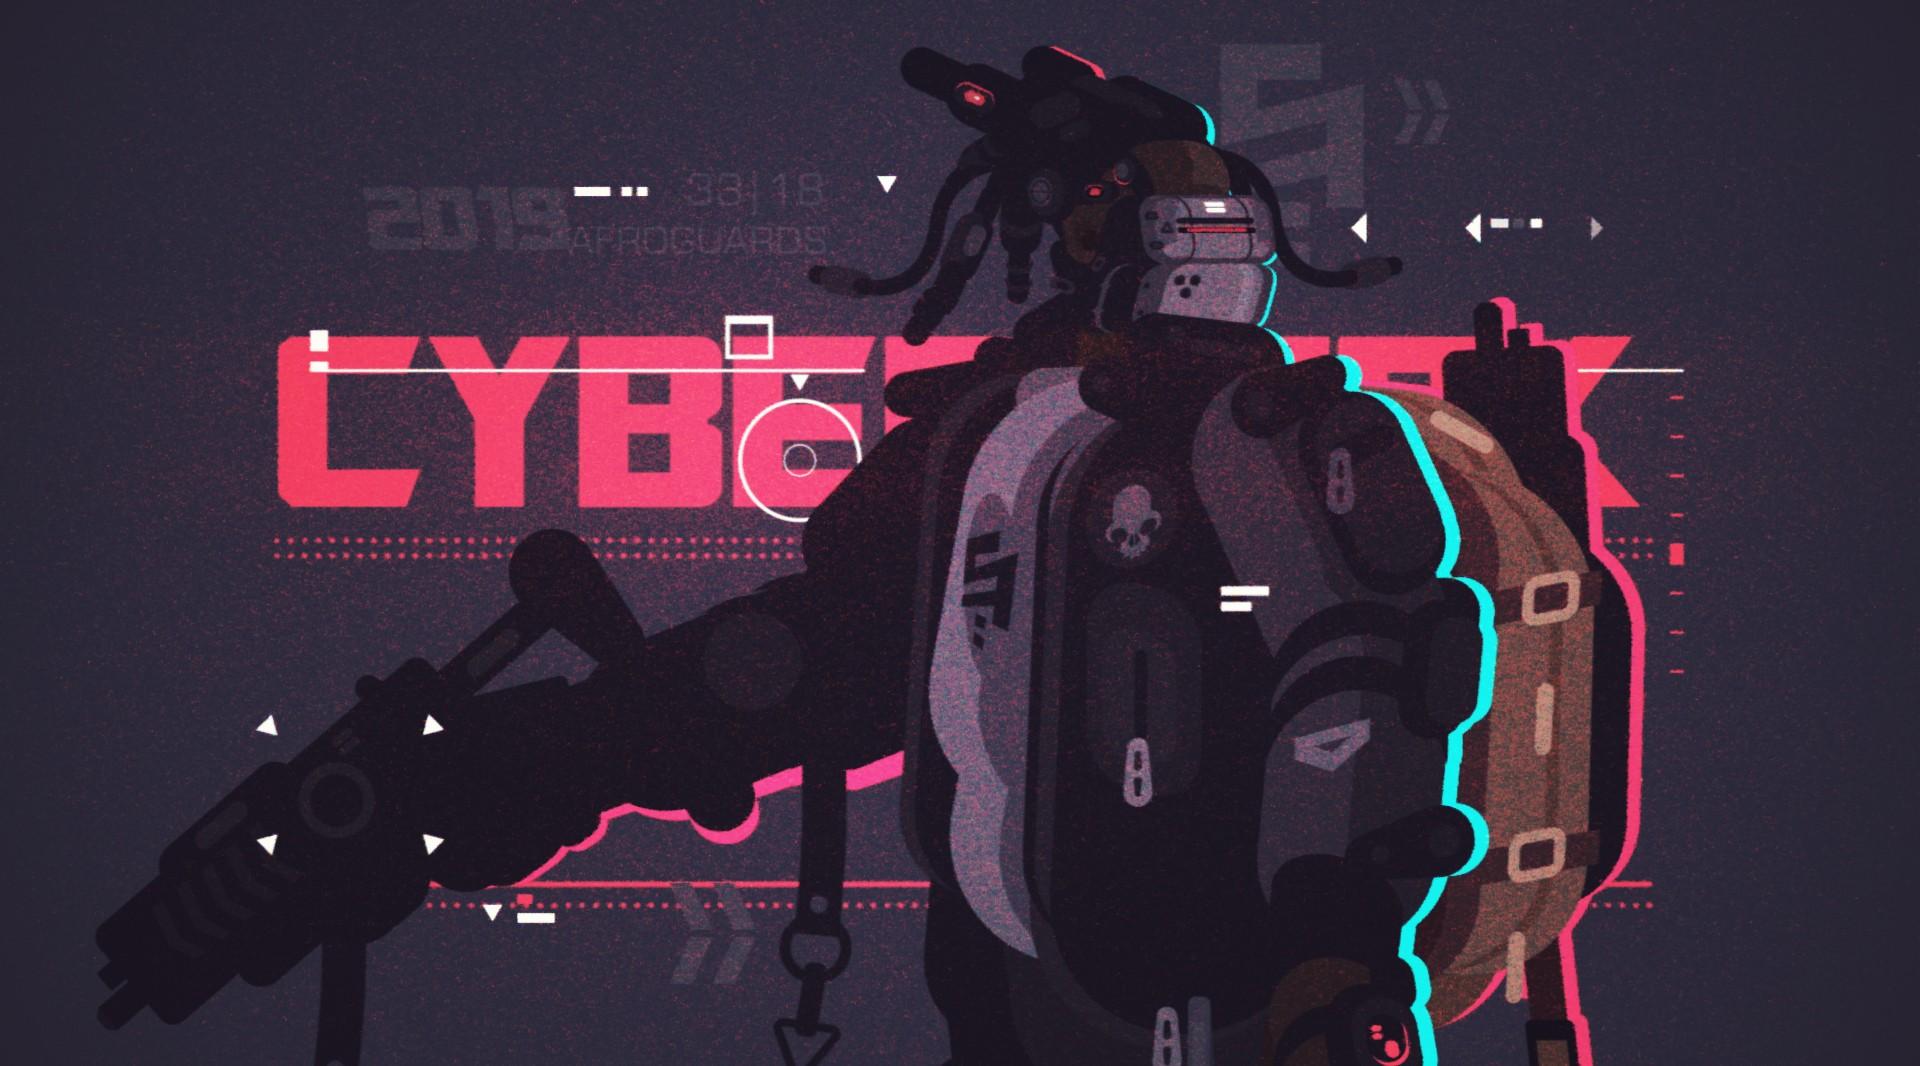 Cyberpunk 2019